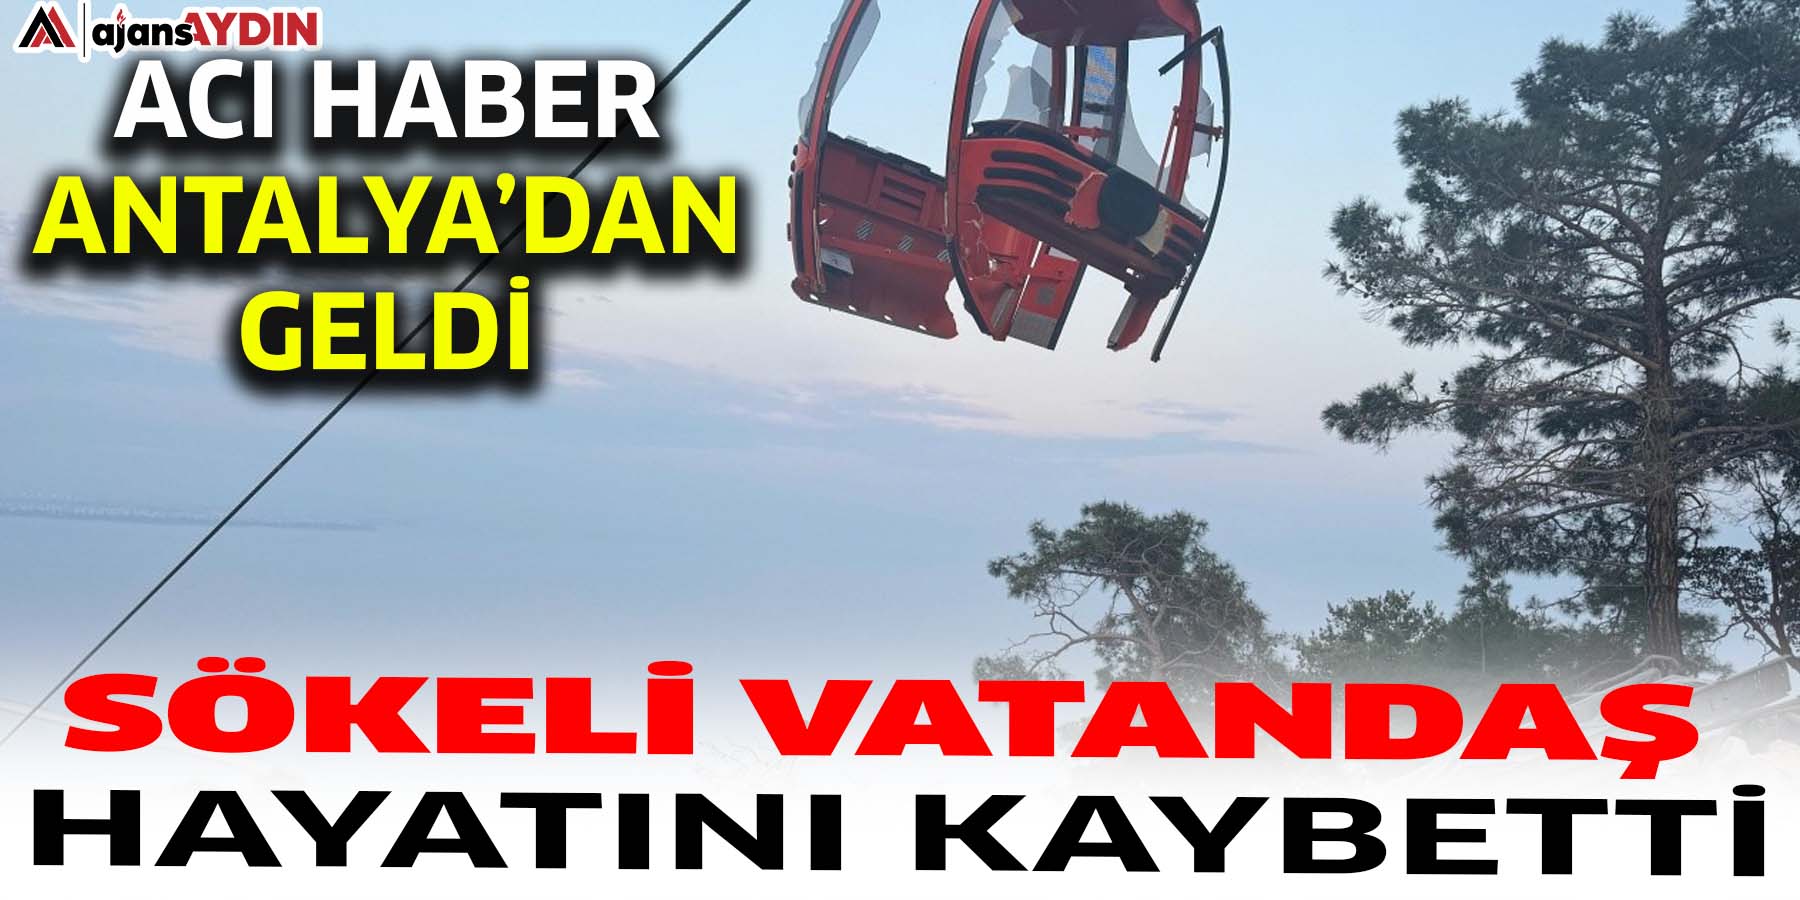 Acı haber Antalya’dan geldi  Sökeli vatandaş hayatını kaybetti